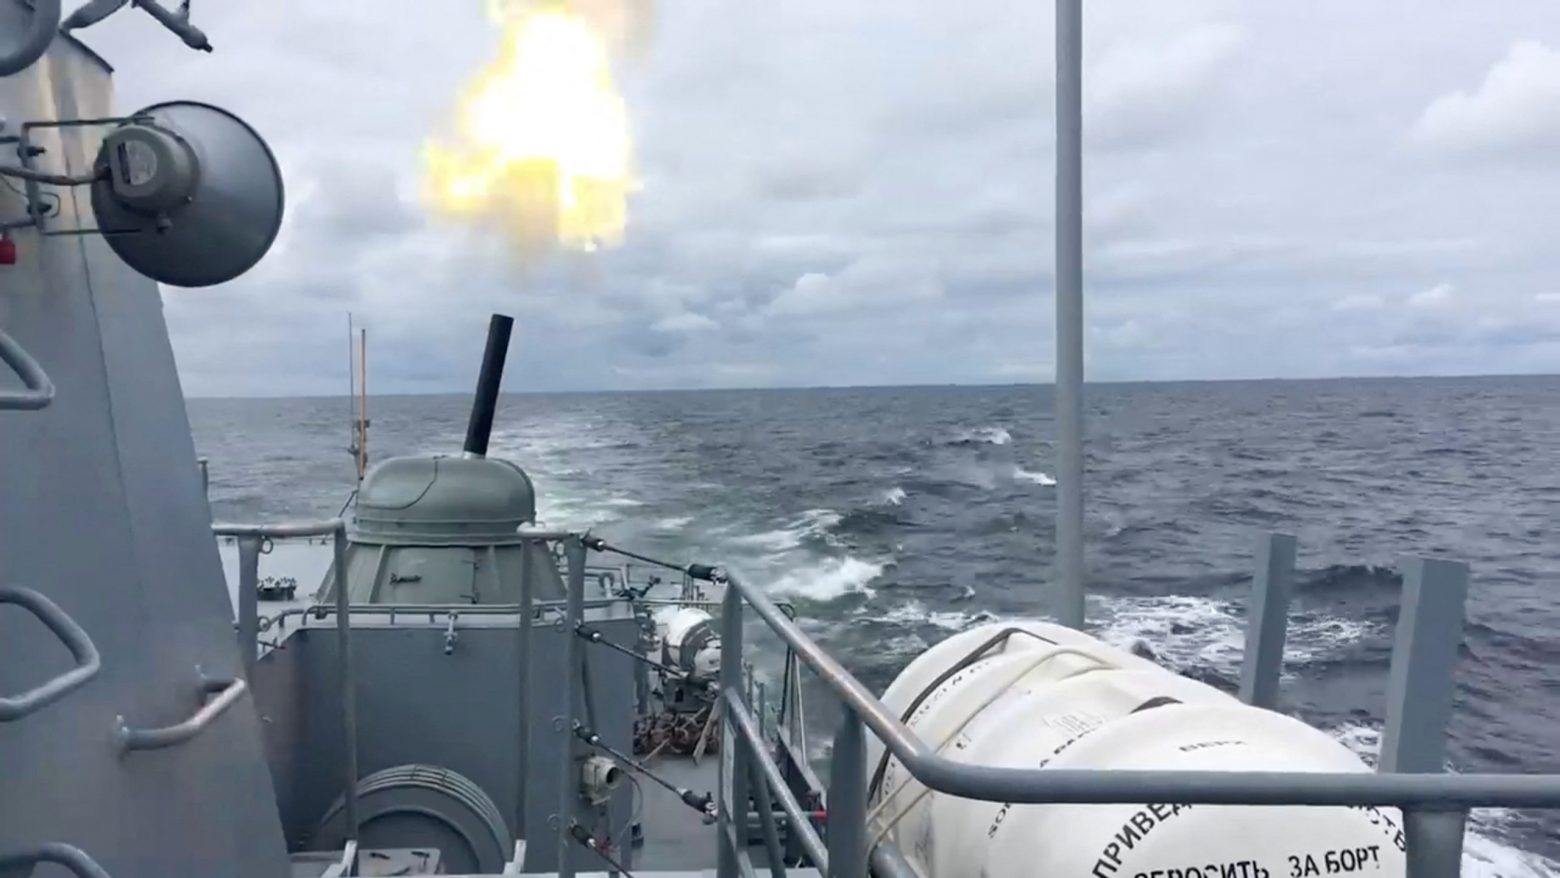 Ρωσία: Από τη Μεσόγειο στη Μαύρη Θάλασσα τα πολεμικά πλοία της - Συνεχίζονται οι στρατιωτικές ασκήσεις